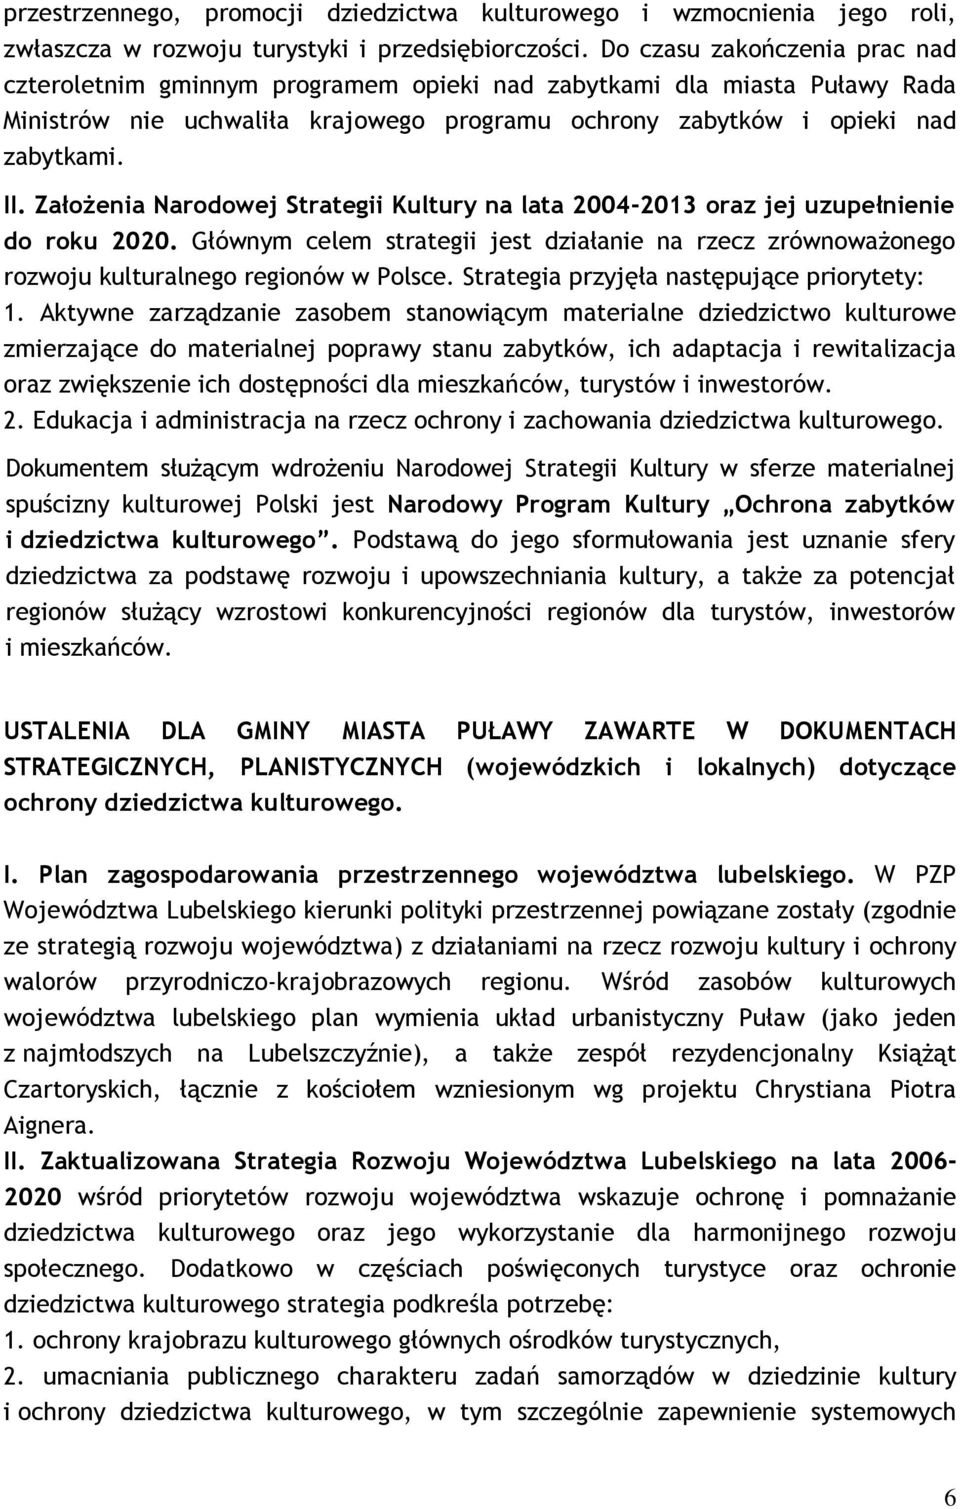 ZałoŜenia Narodowej Strategii Kultury na lata 2004-2013 oraz jej uzupełnienie do roku 2020. Głównym celem strategii jest działanie na rzecz zrównowaŝonego rozwoju kulturalnego regionów w Polsce.